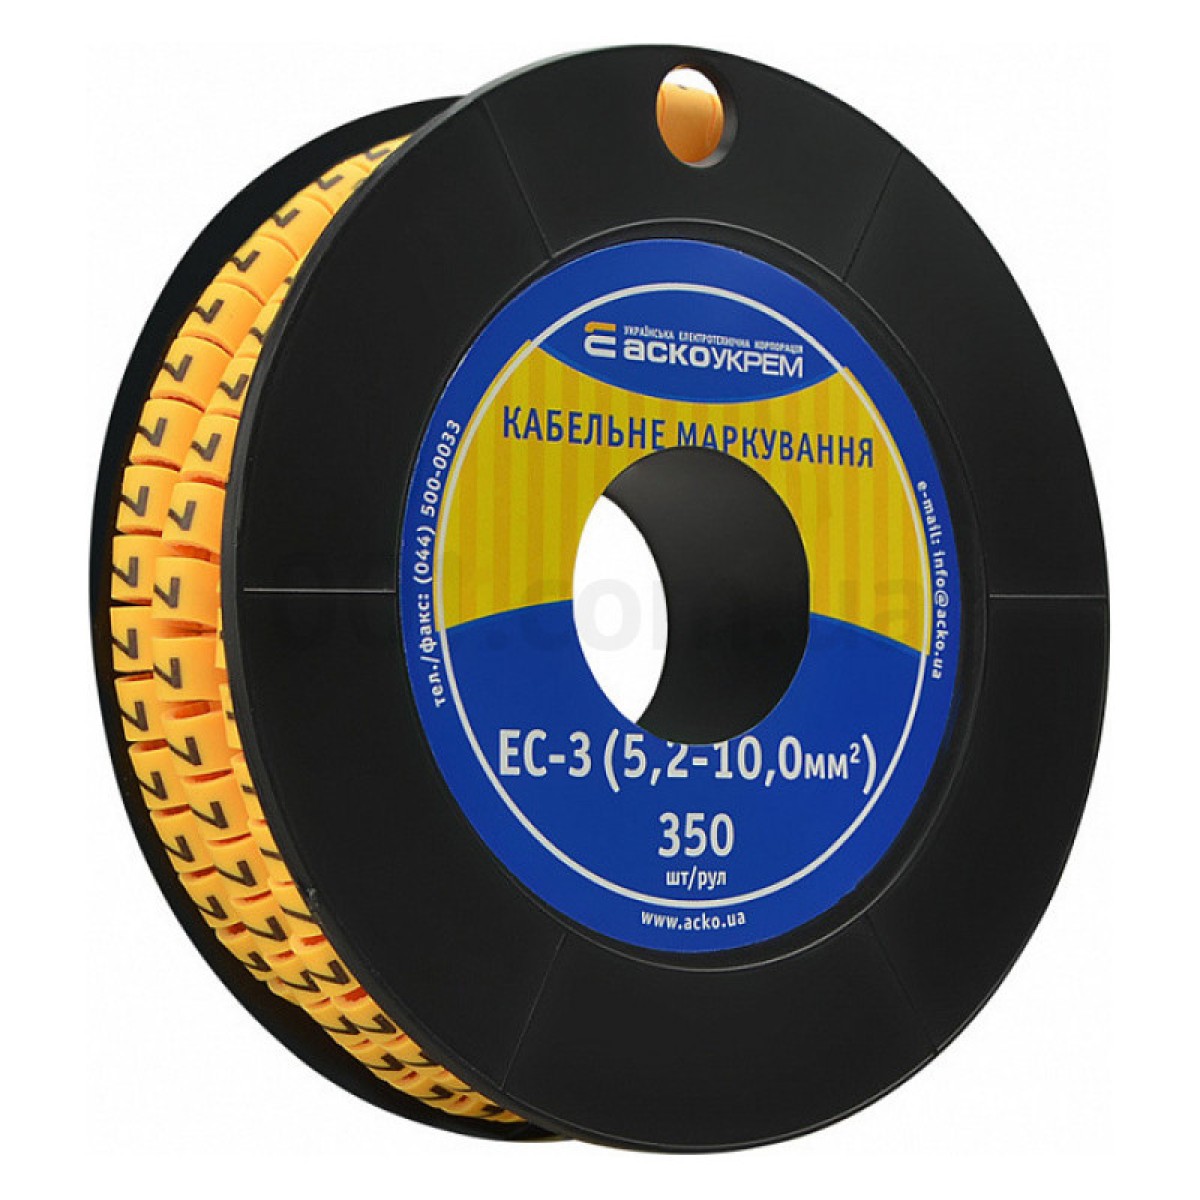 Маркировка EC-3 для кабеля 5,2-10,0 мм² символ «7» (рулон 250 шт.), АСКО-УКРЕМ 256_256.jpg